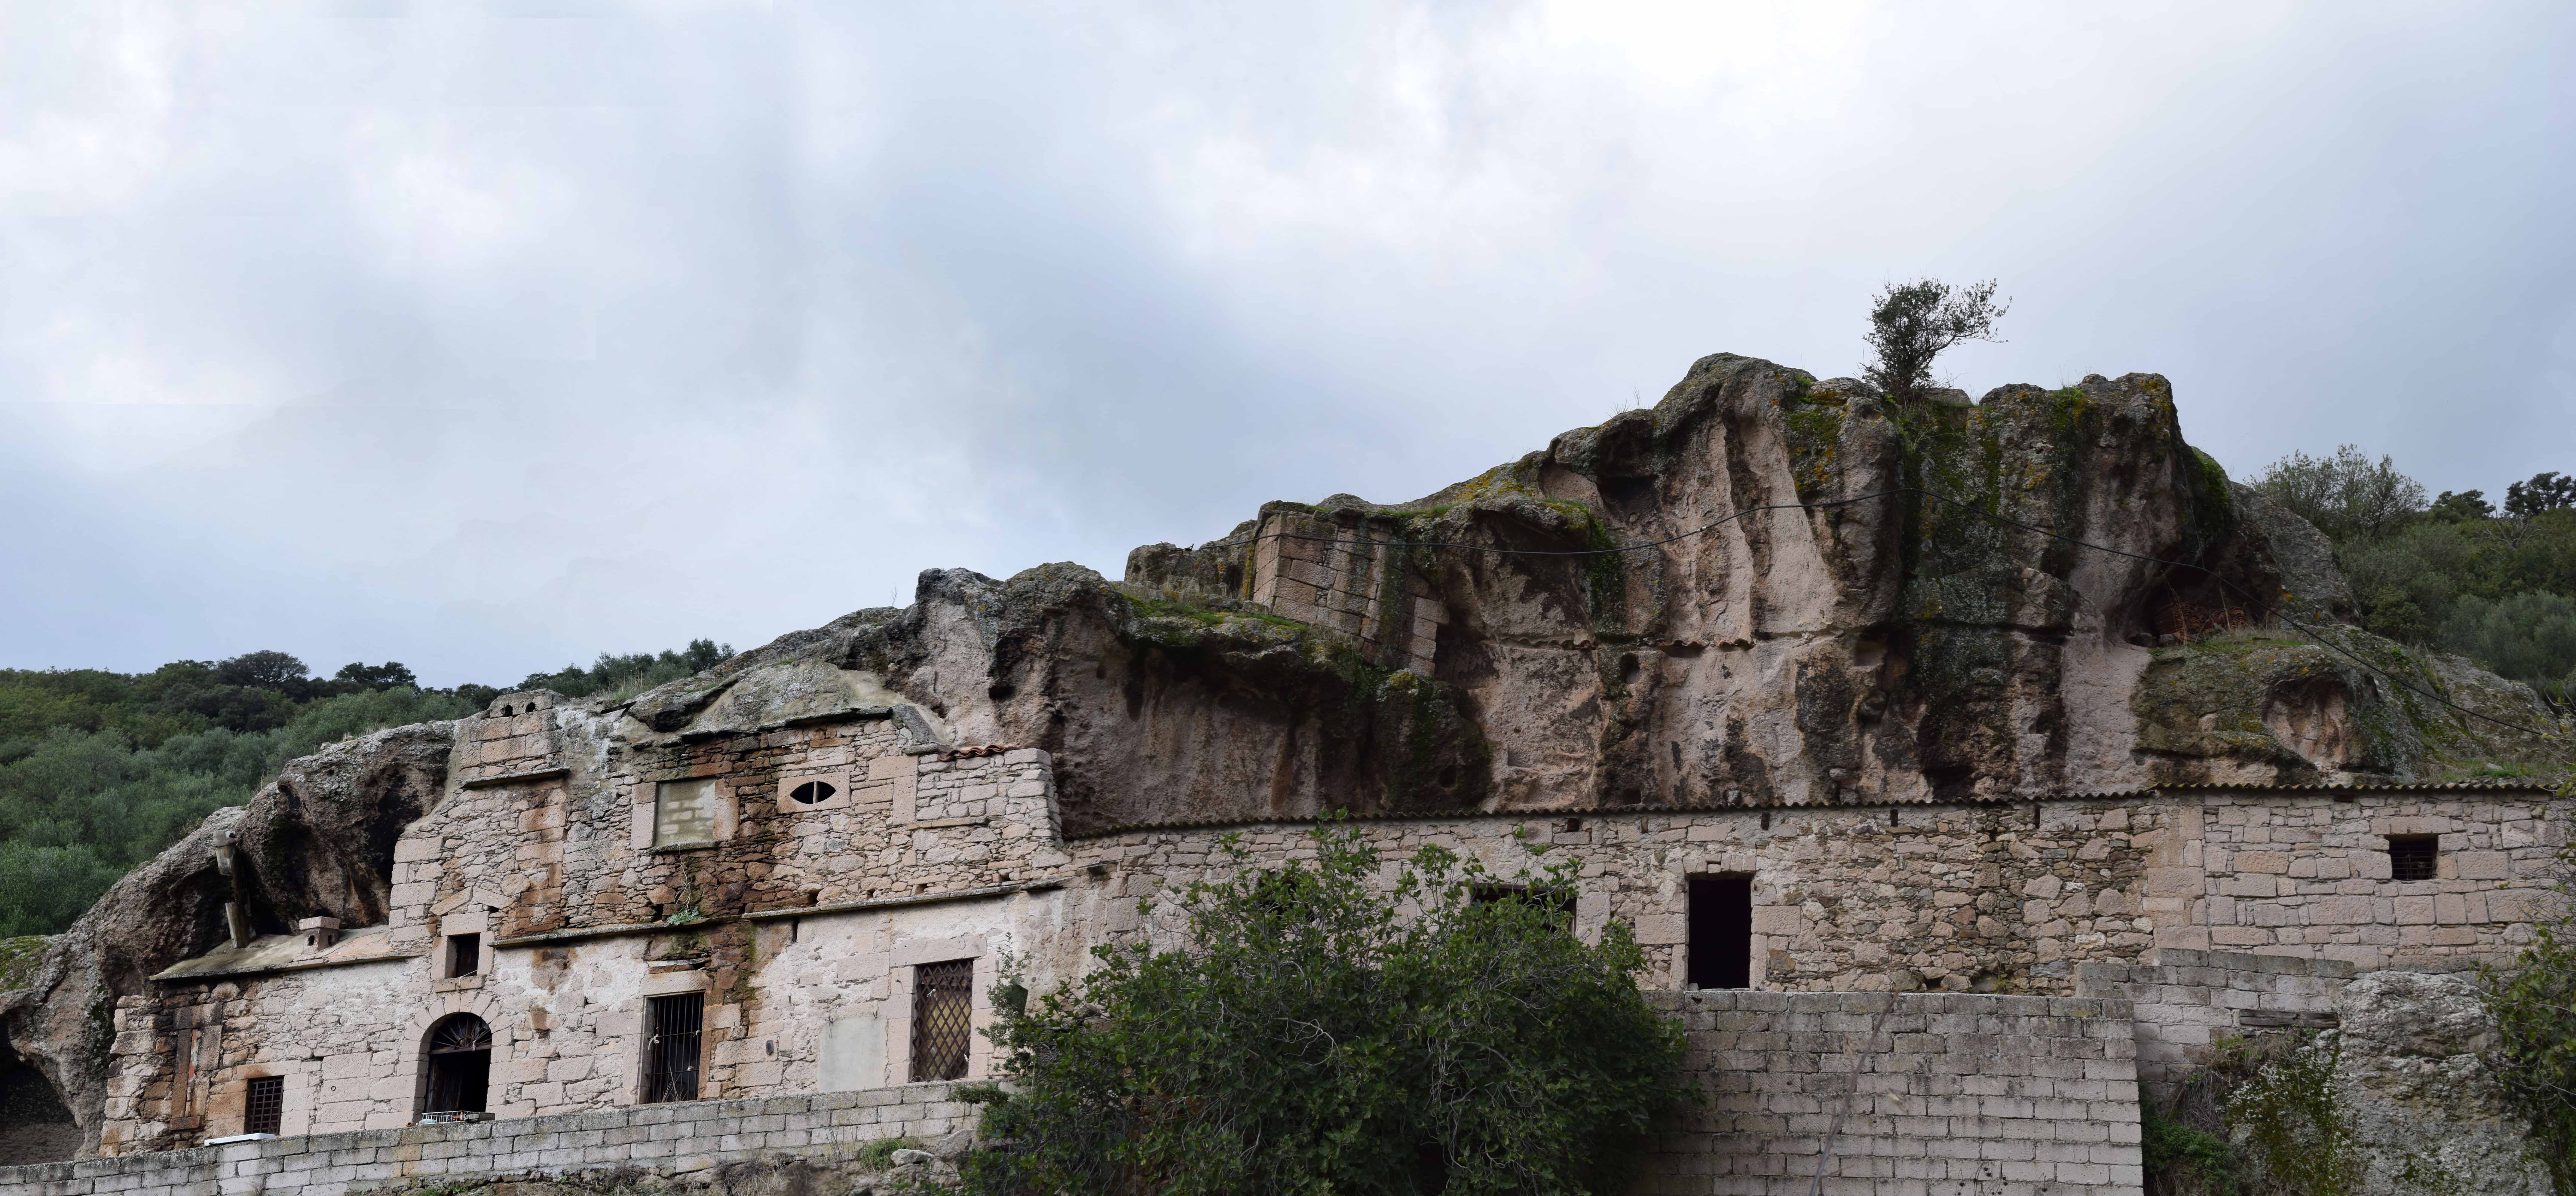 Case nella roccia (casa) - Nughedu San Nicolò (SS) 